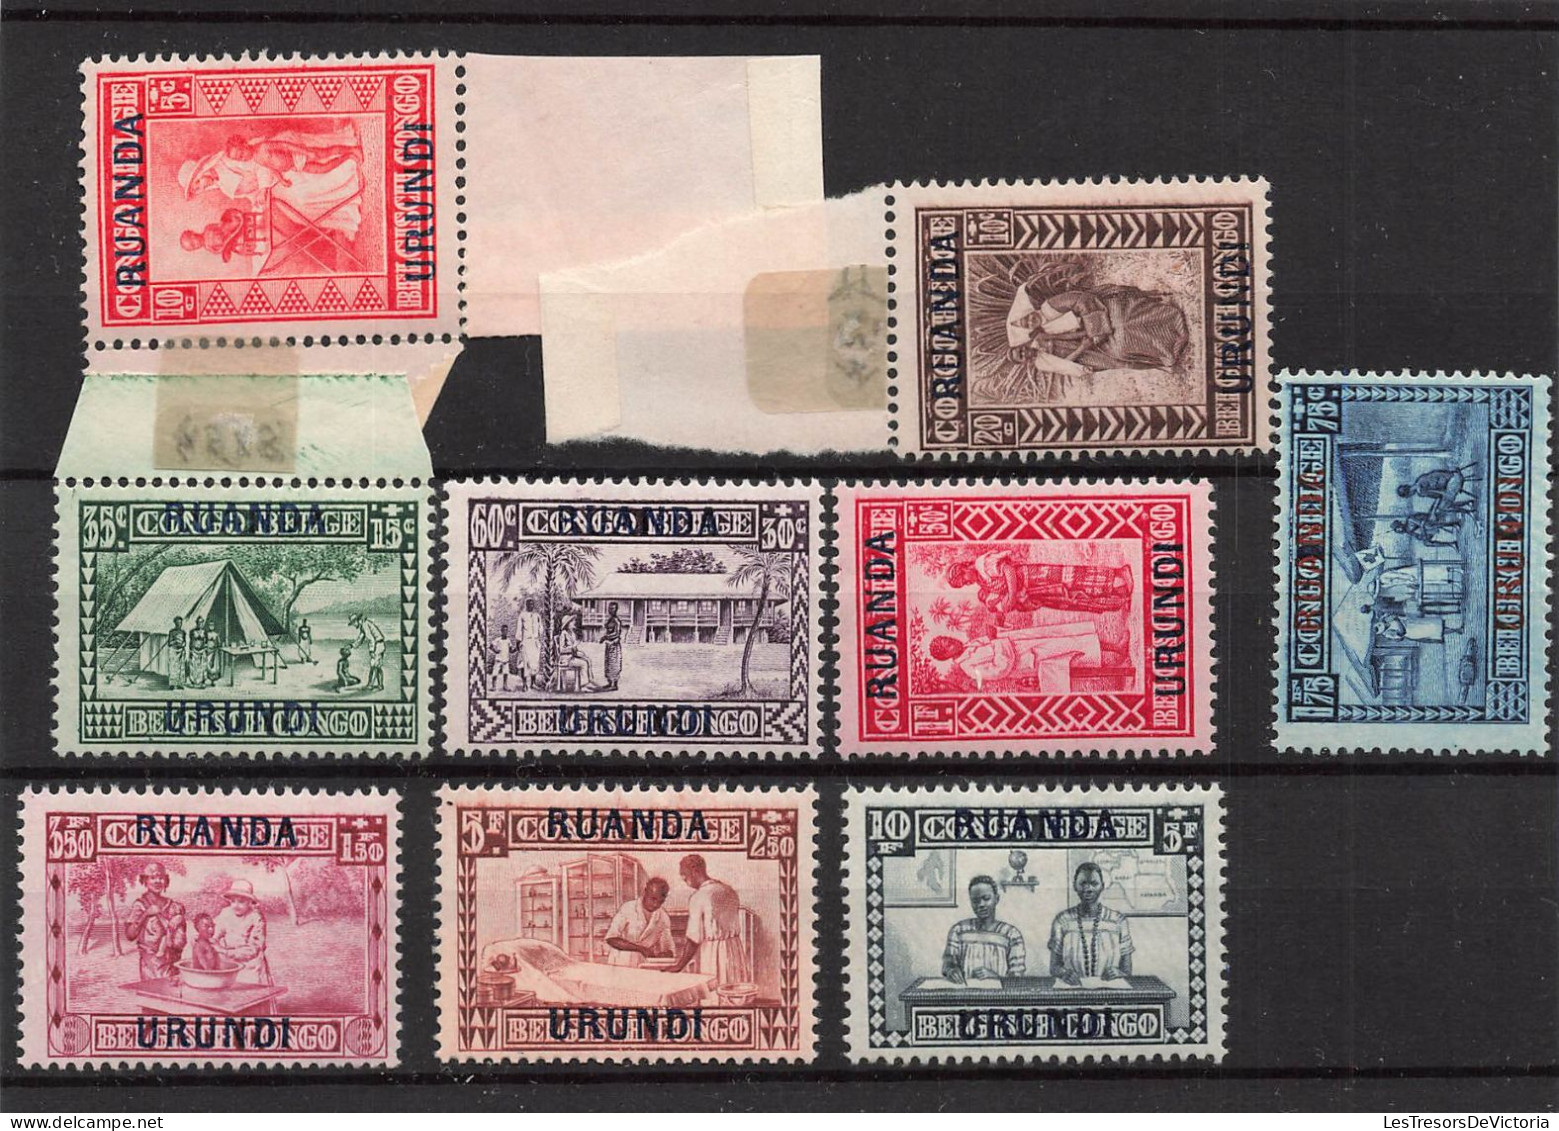 Timbres - Ruanda Urundi - 1930 - COB 81/89*Goutte De Lait Surchargé - Cote75 - Nuovi